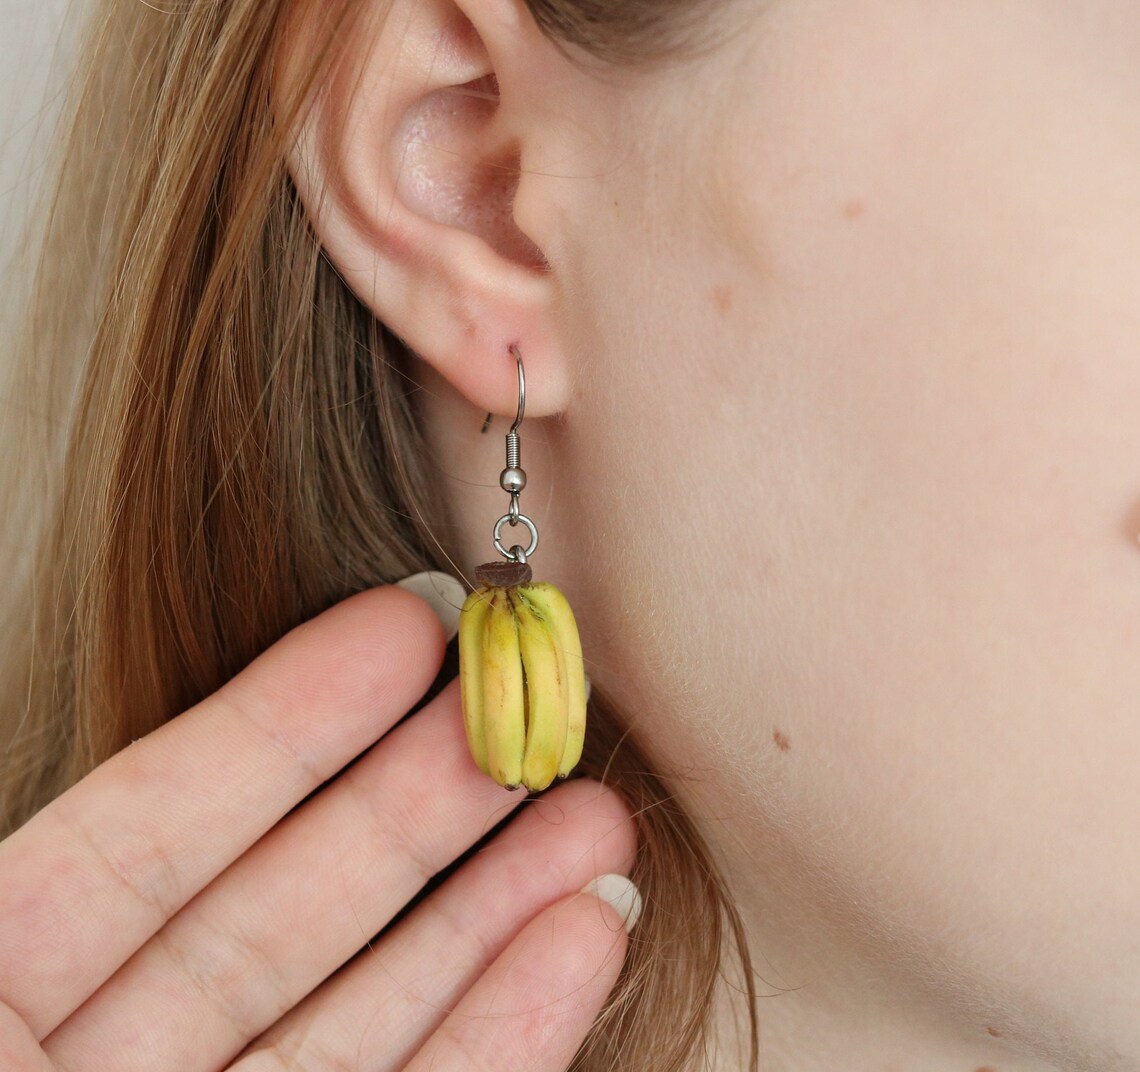 Hyper Realistic Fruit Earrings By Helen Creative (15)